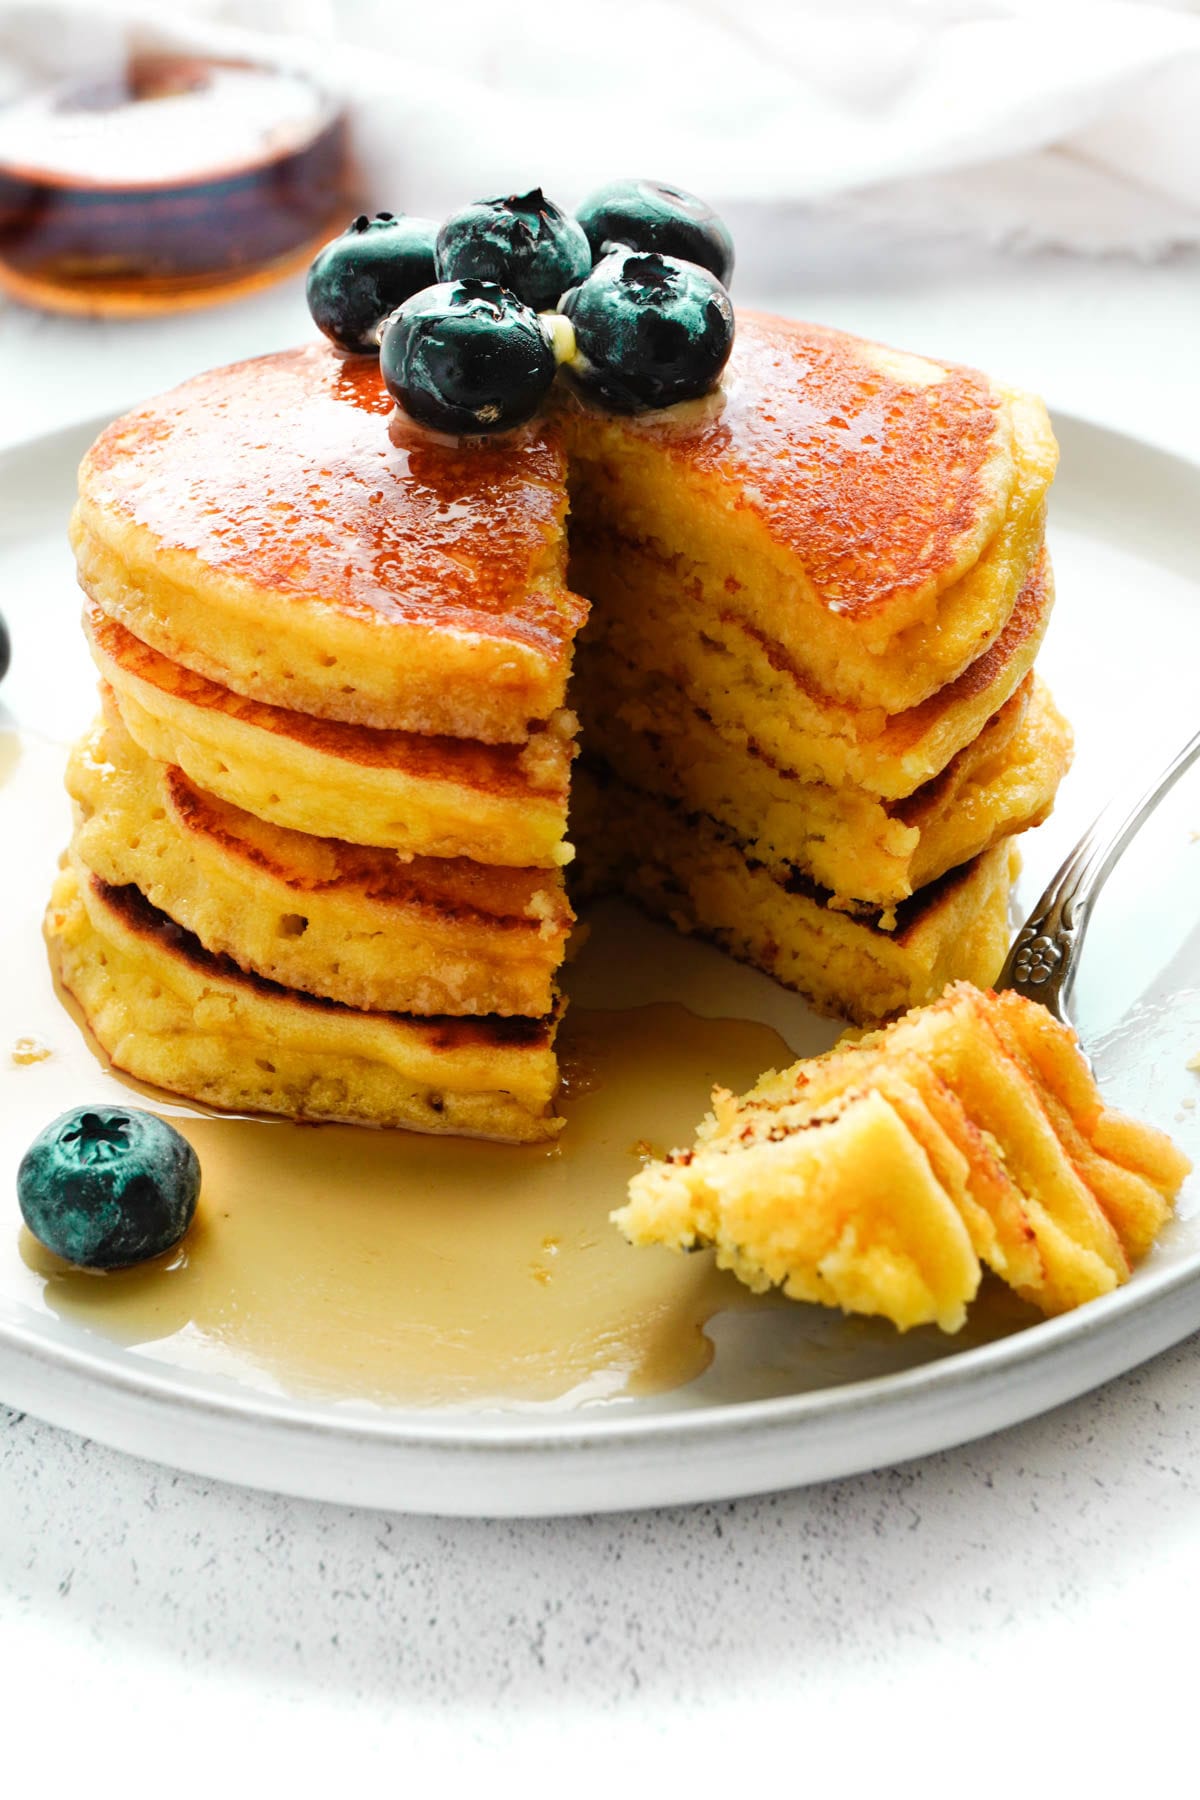 almond flour pancakes with blueberries